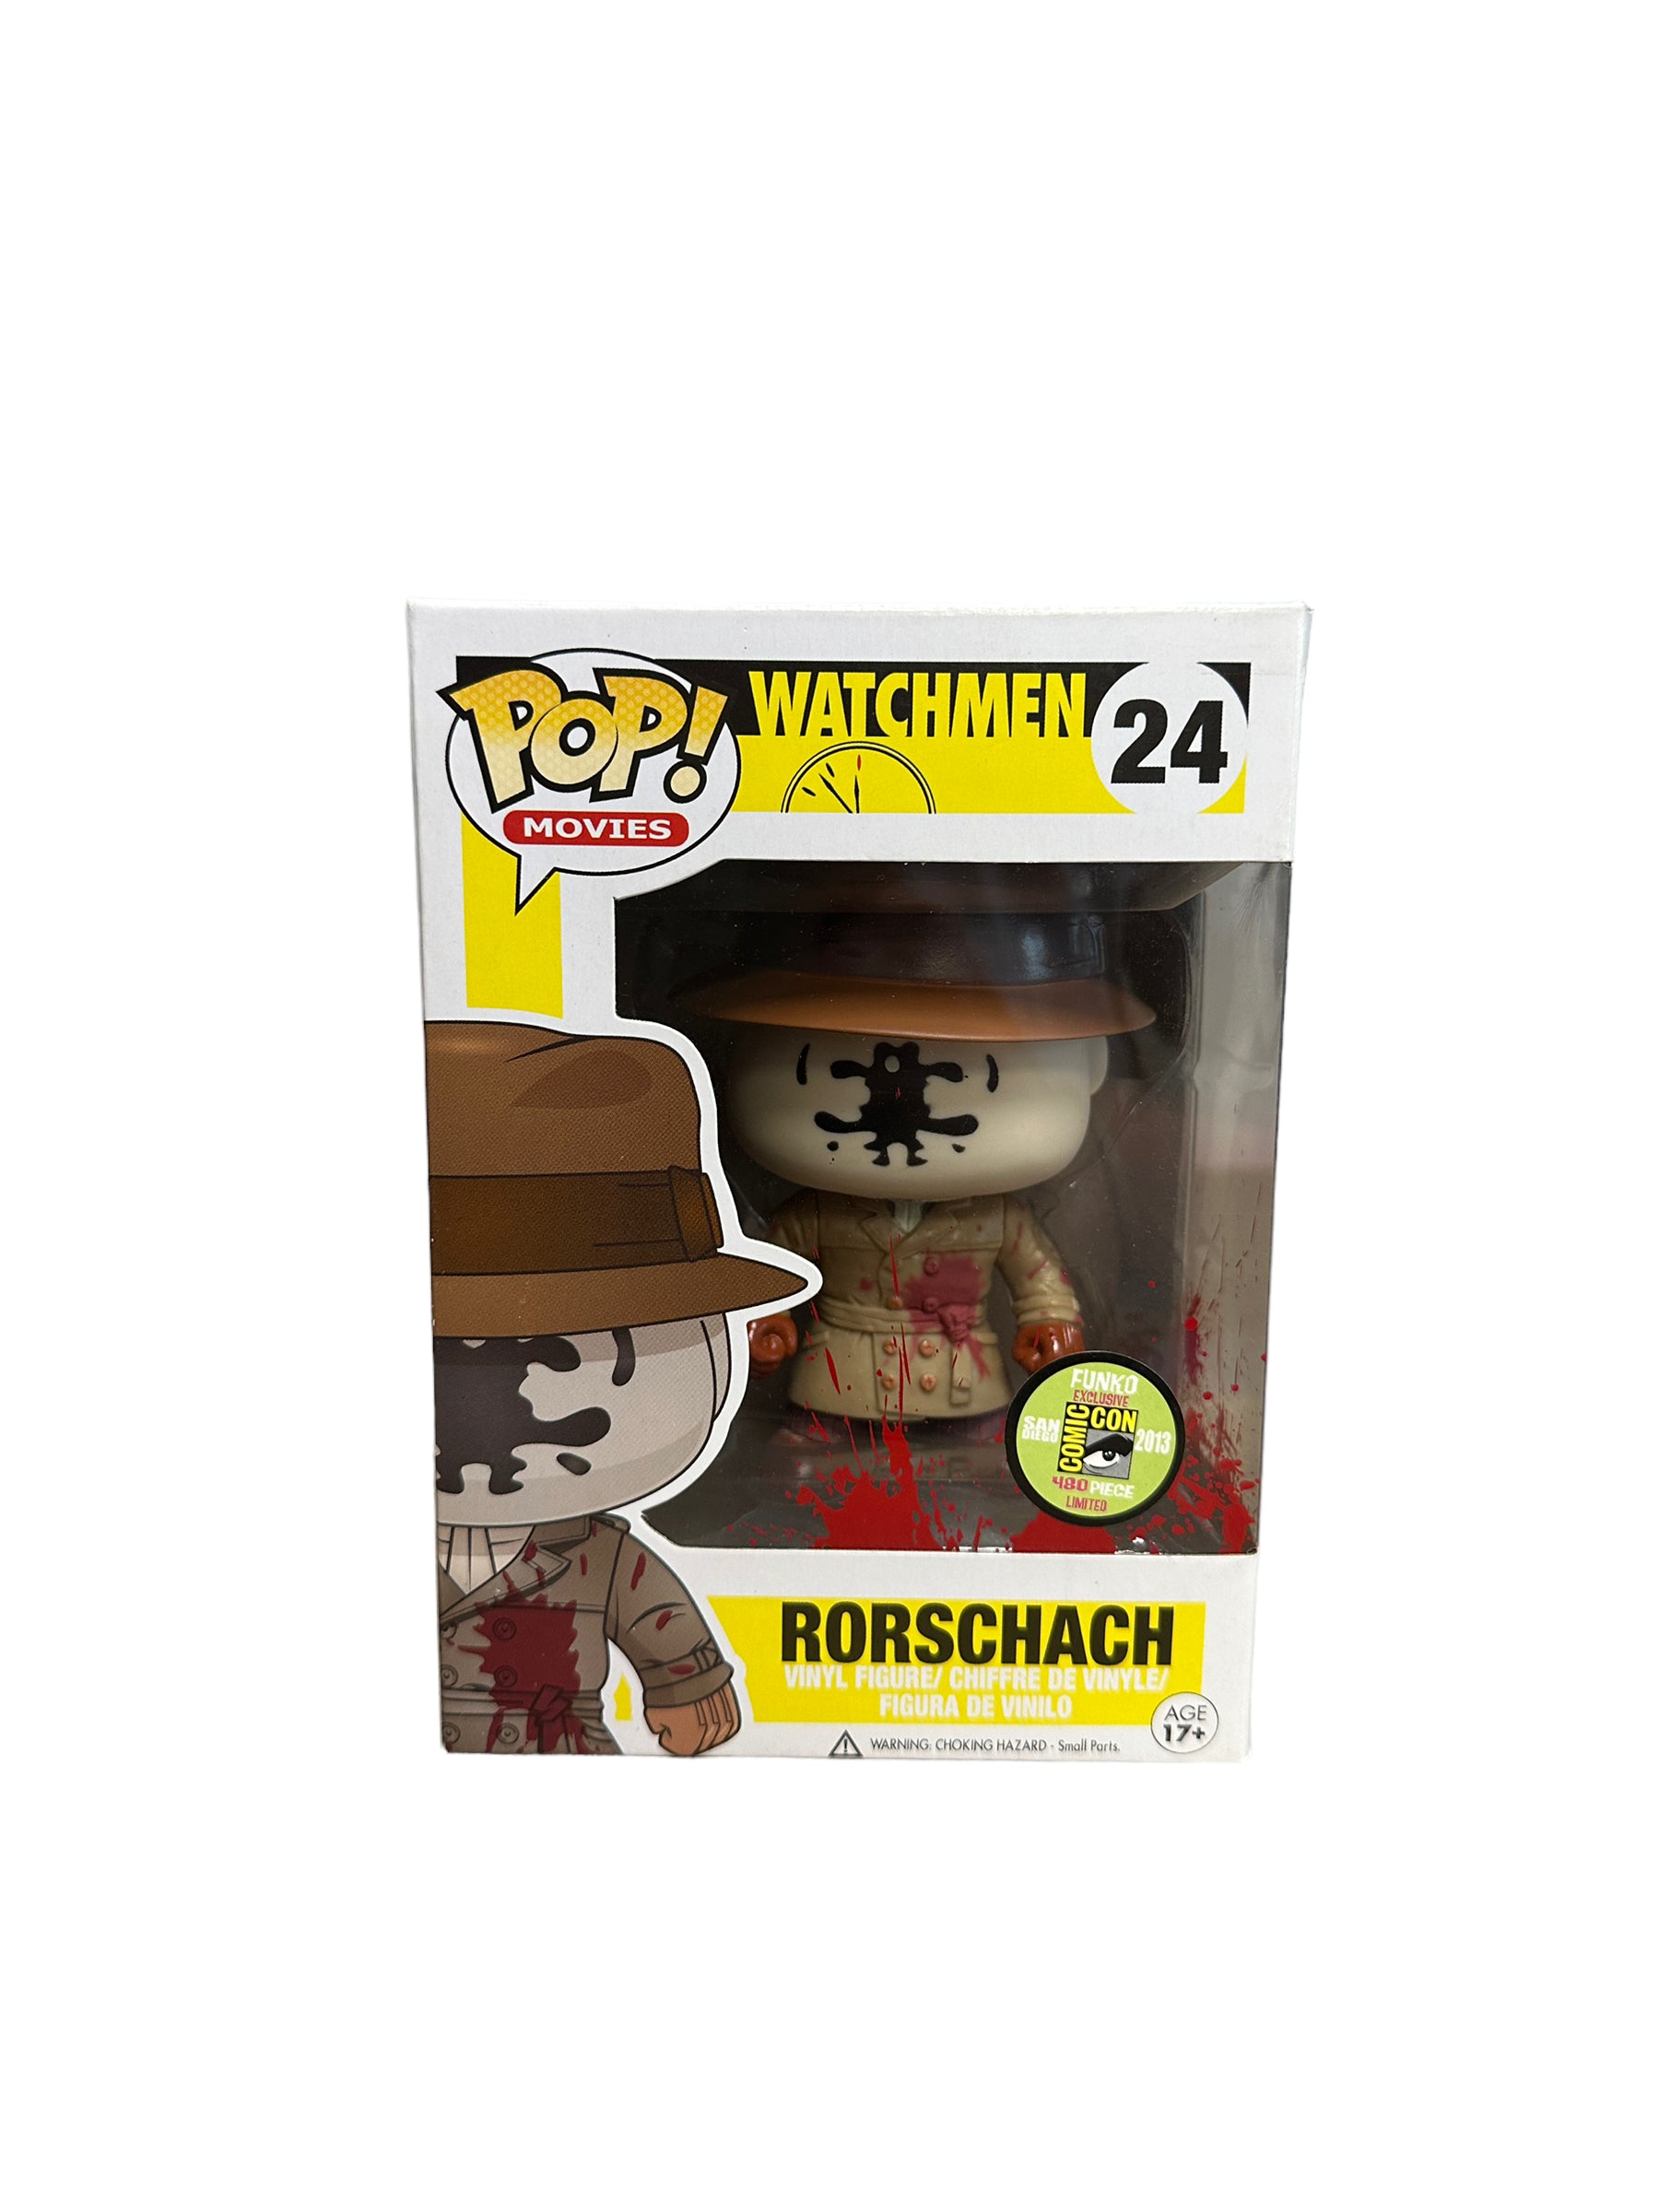 Rorschach #24 (Bloody) Funko Pop! - Watchmen - SDCC 2013 Exclusive LE480 Pcs - Condition 8.5/10